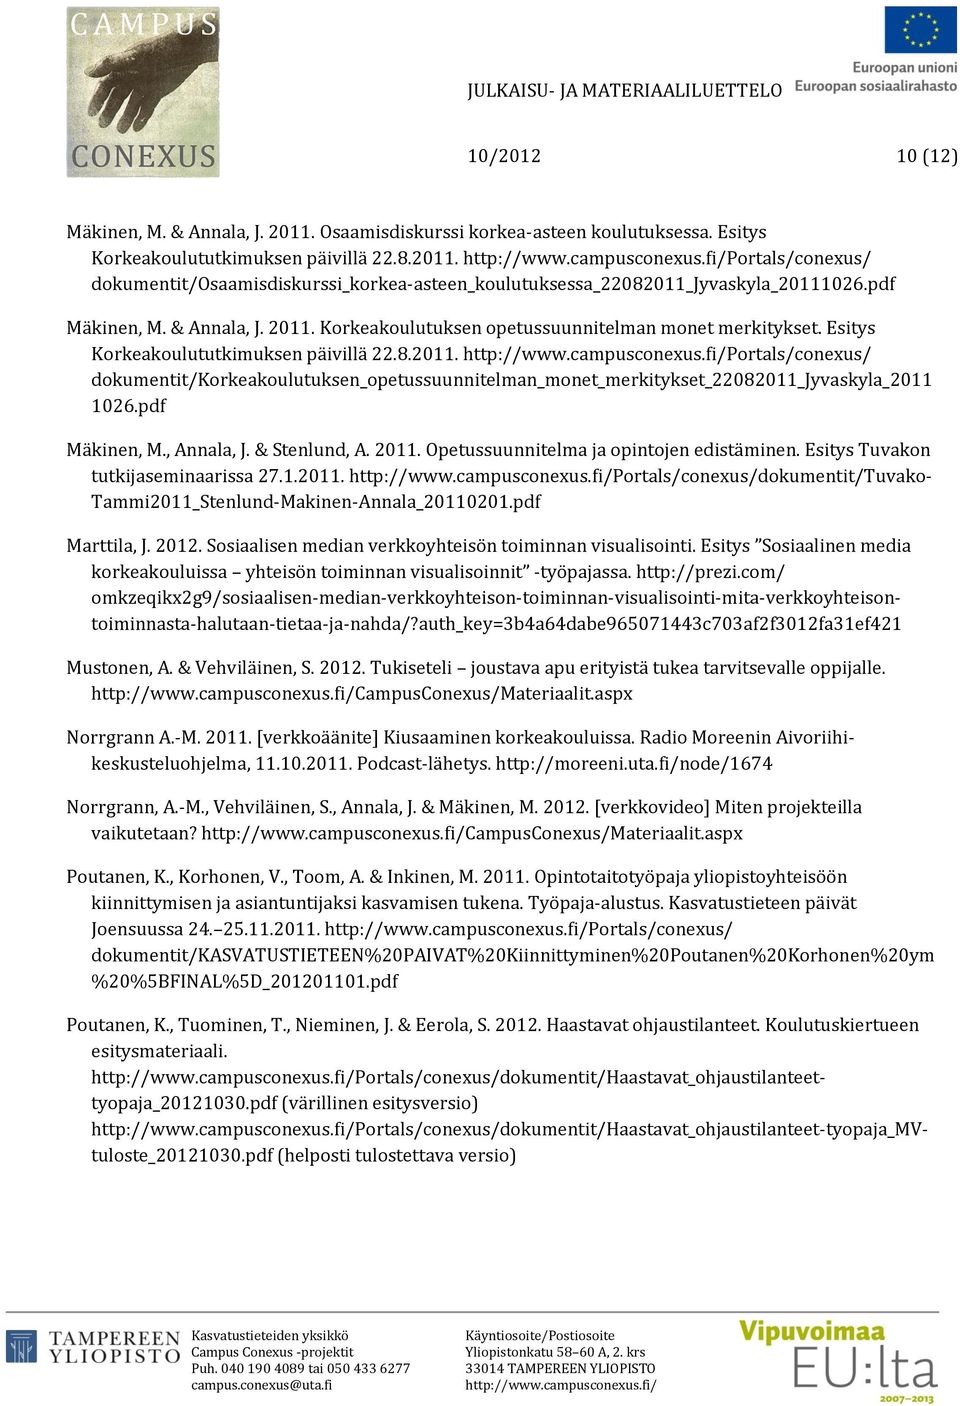 pdf Mäkinen, M., Annala, J. & Stenlund, A. 2011. Opetussuunnitelma ja opintojen edistäminen. Esitys Tuvakon tutkijaseminaarissa 27.1.2011. Portals/conexus/dokumentit/Tuvako- Tammi2011_Stenlund-Makinen-Annala_20110201.